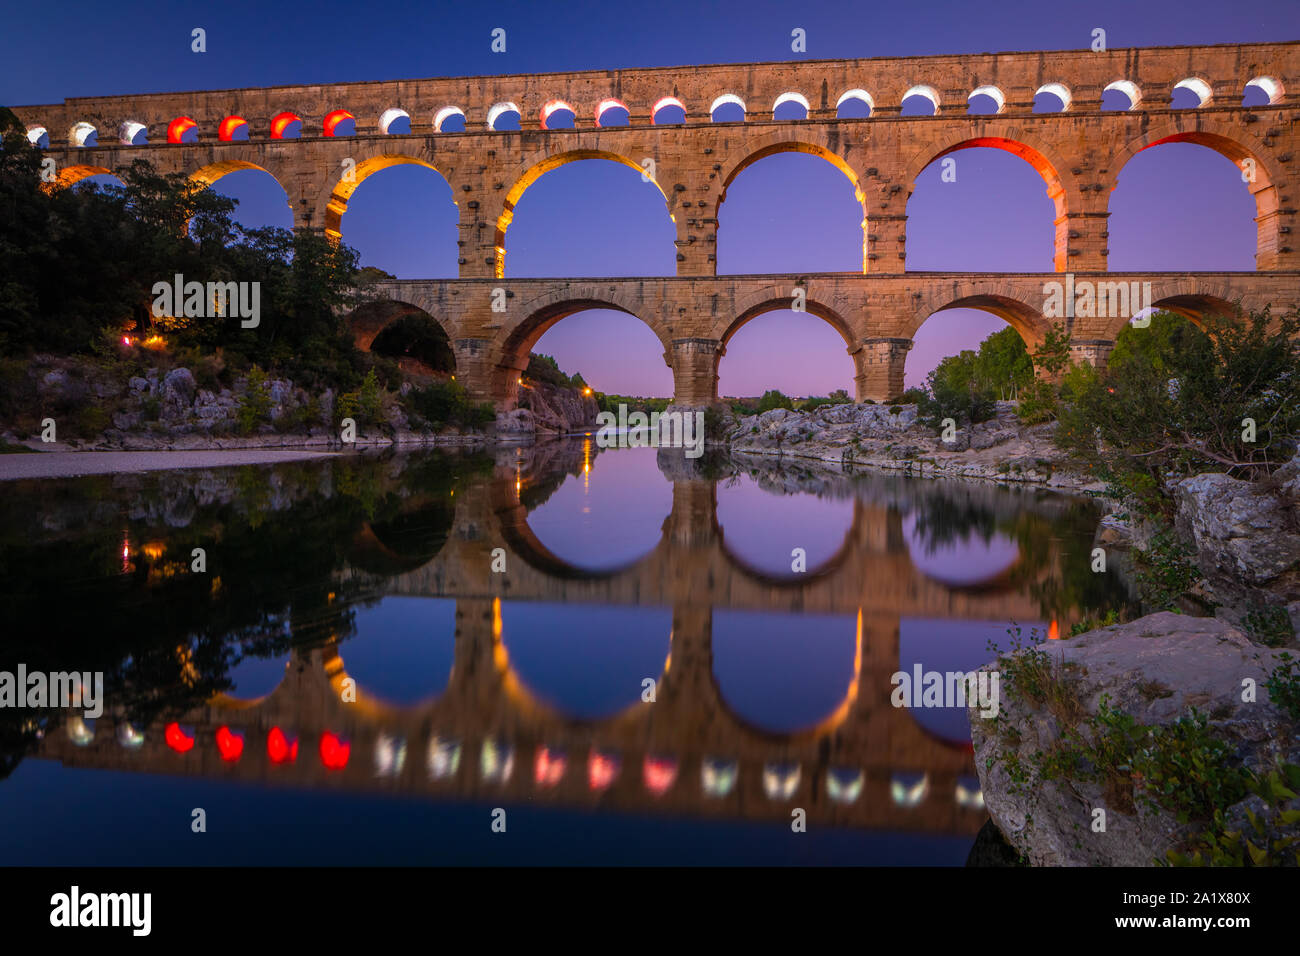 Le Pont du Gard est un aqueduc dans le sud de la France, dans la province de Provence, construit par l'Empire romain, et situé dans la région de Castillon-du-Gard sw Banque D'Images